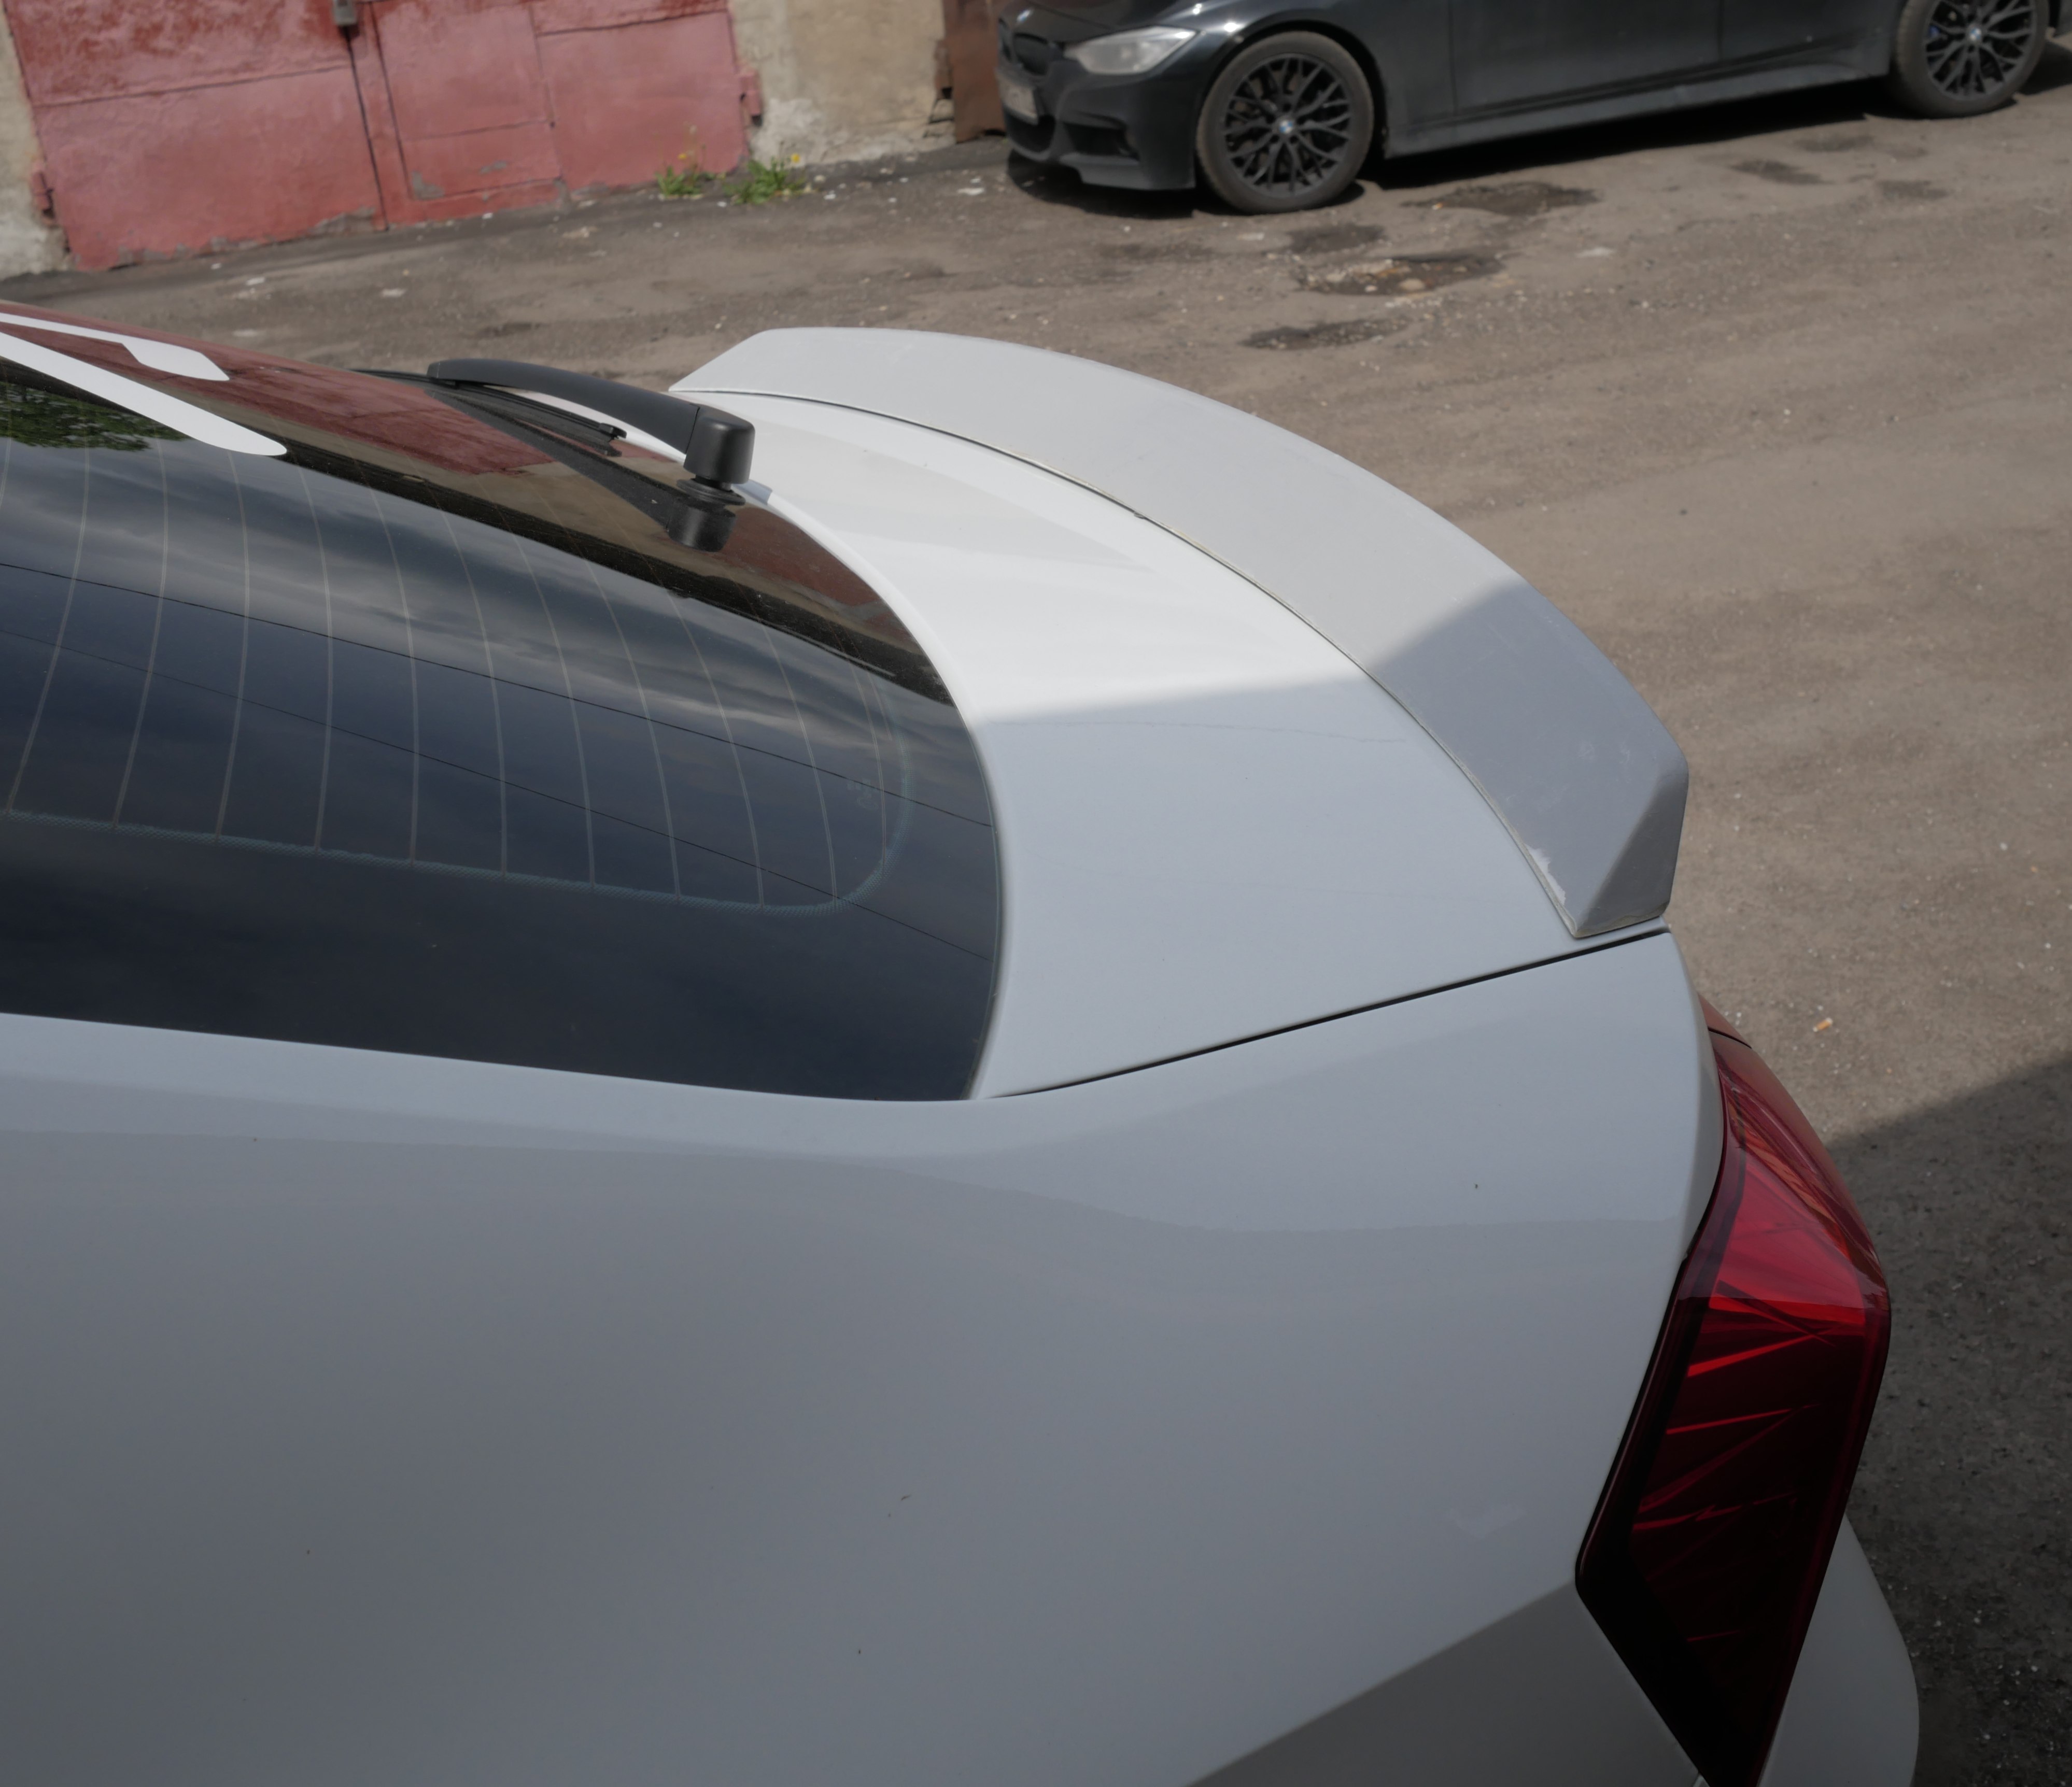 Спойлер на рапид. Спойлер RS Skoda Rapid. Спойлер на Рапид 2021 крышку багажника. Спойлер Skoda Rapid 2. Спойлер Рапид 2020.